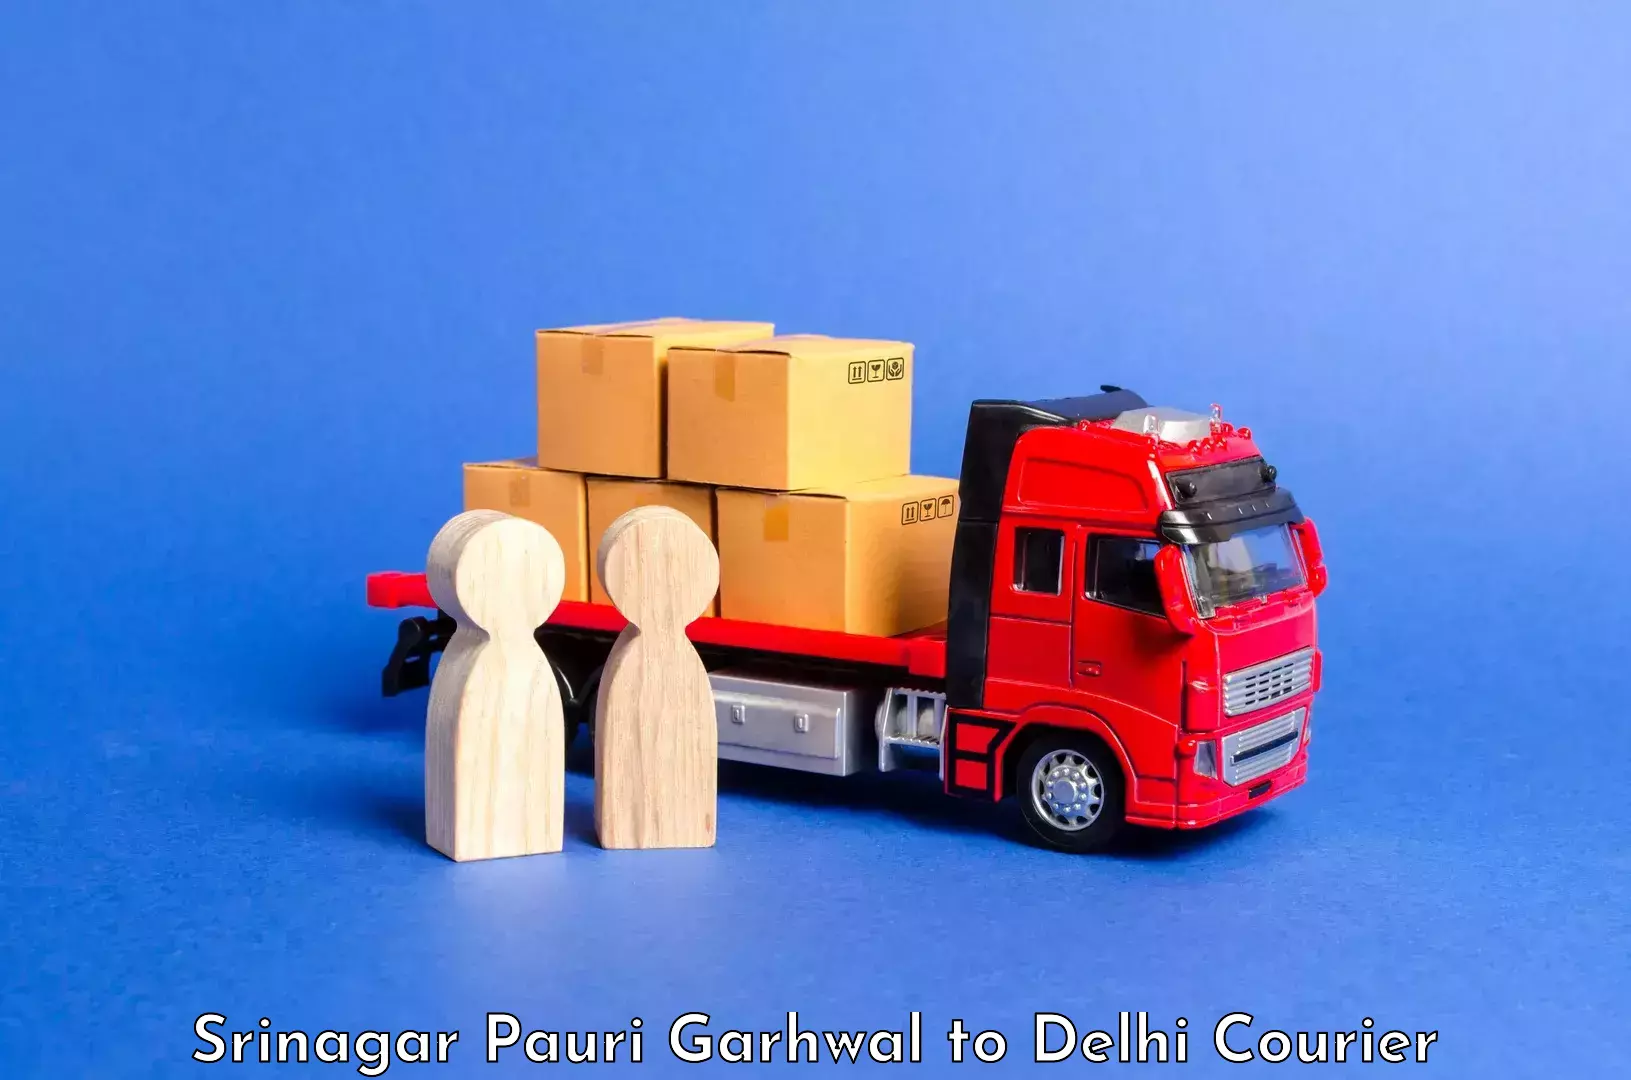 Luggage delivery system Srinagar Pauri Garhwal to East Delhi